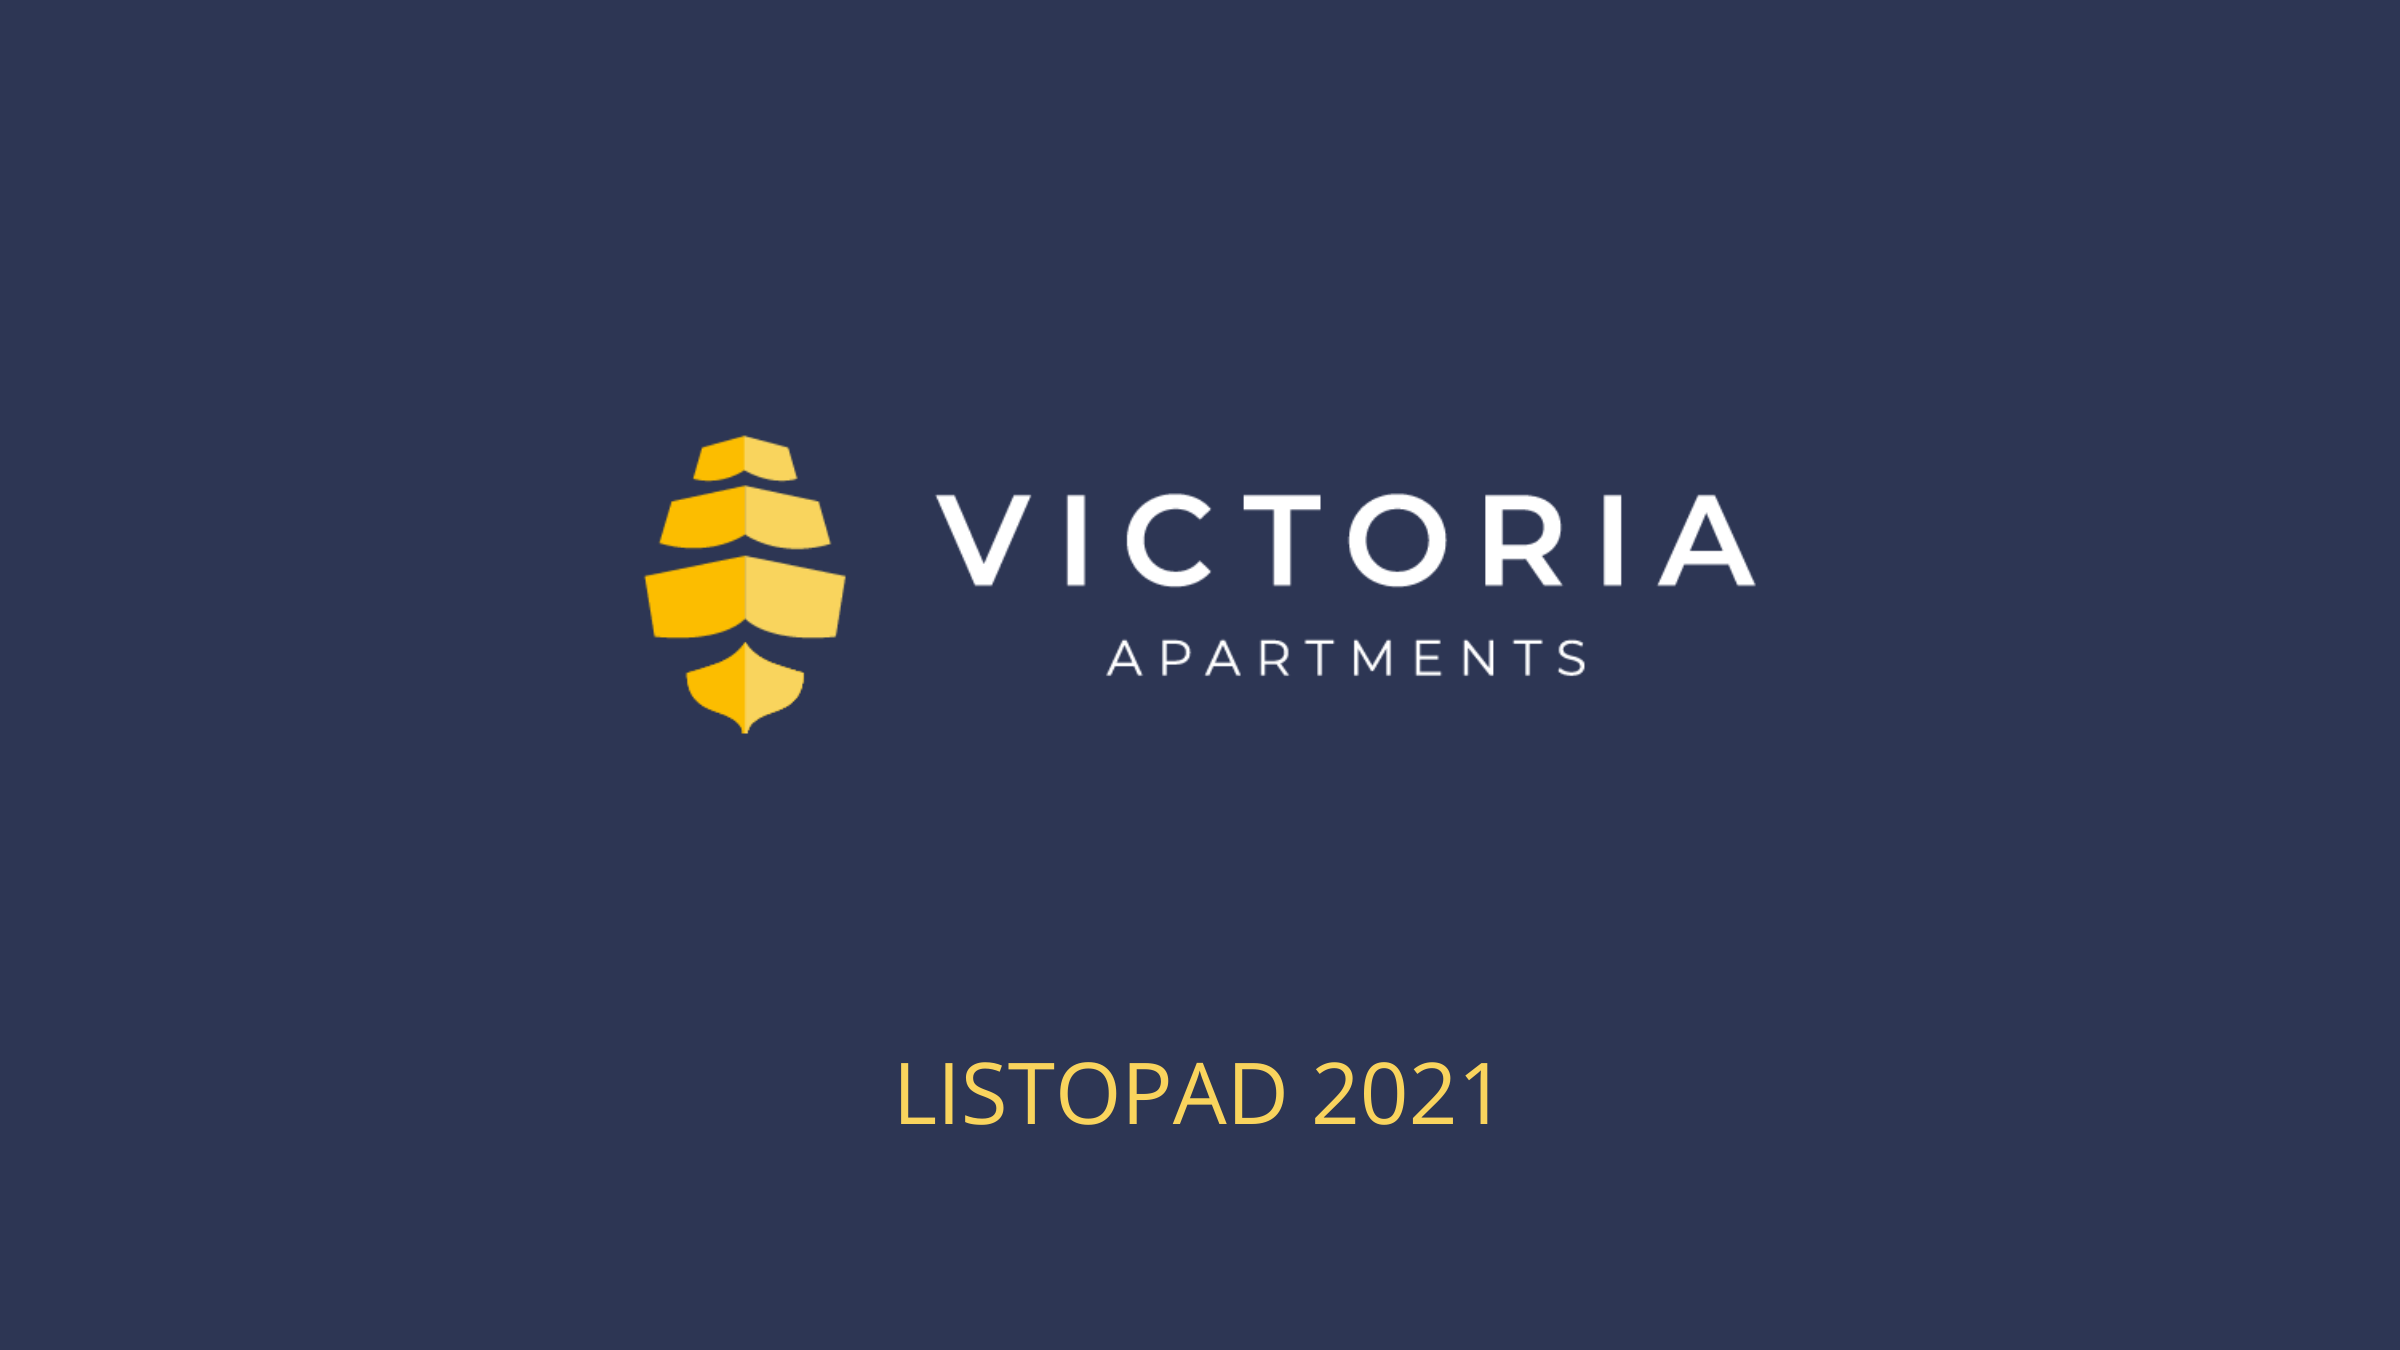 Victoria, Dziennik budowy - Victoria Apartments w Szczecinie - listopad 2021